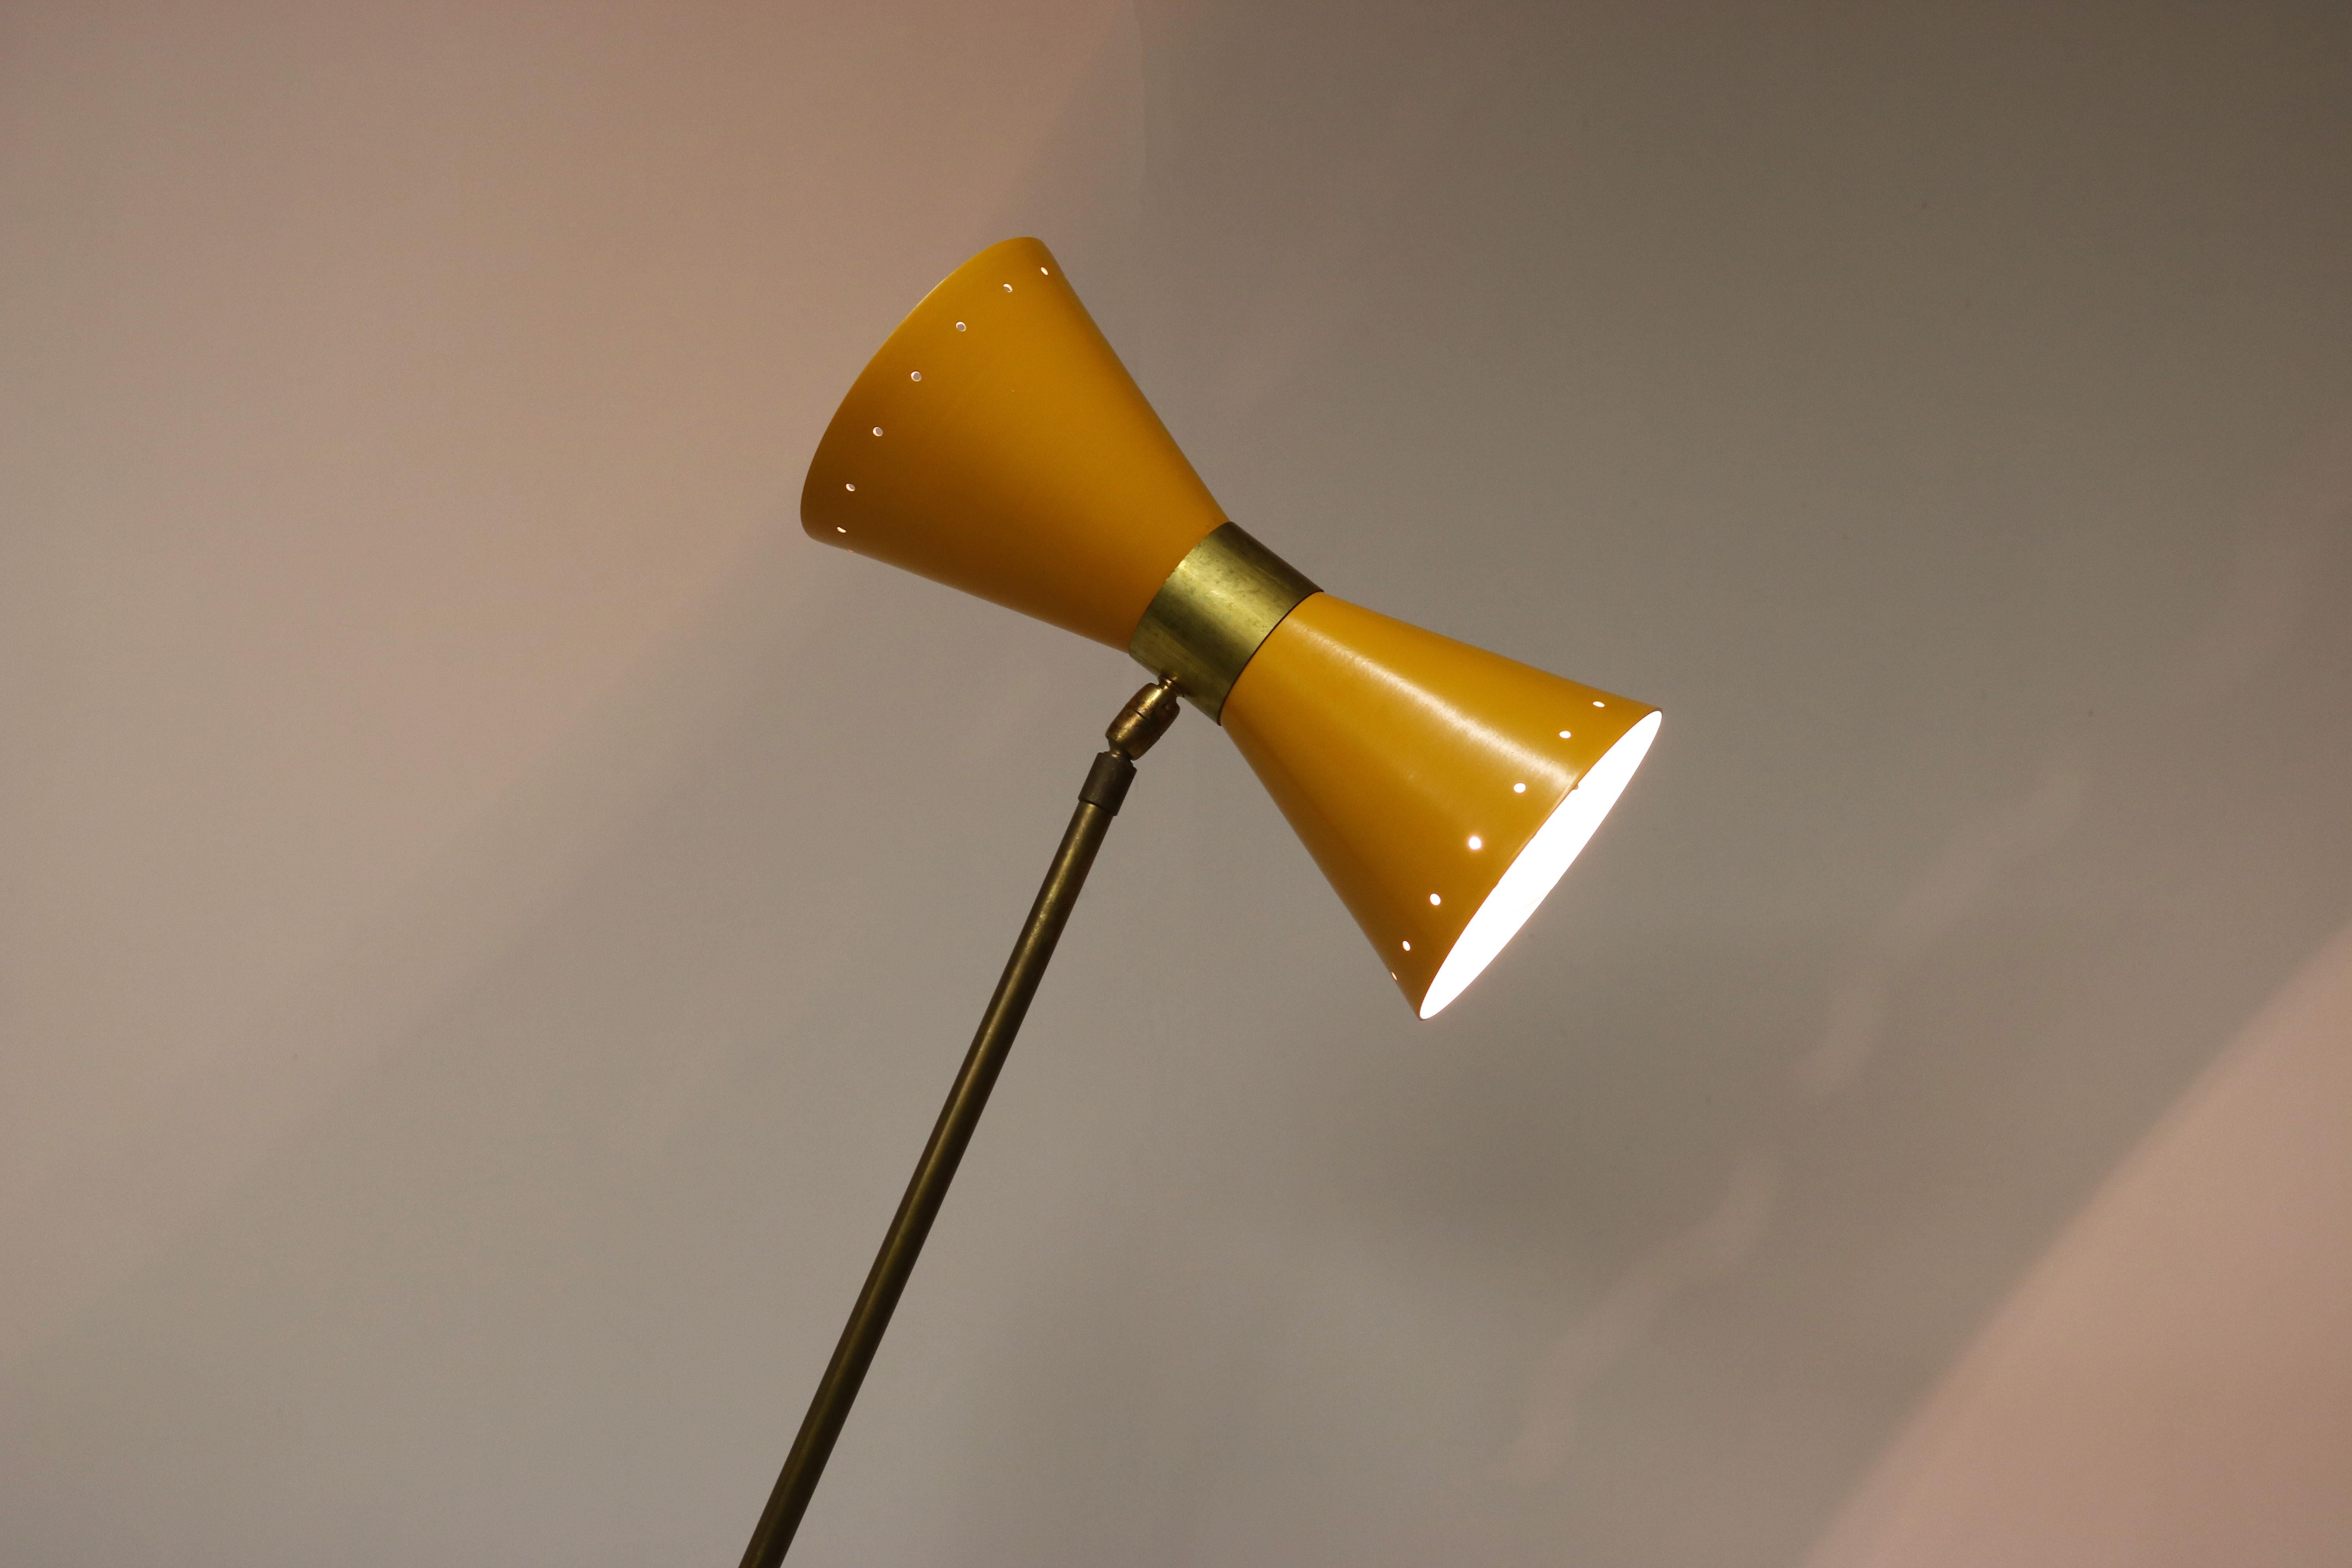 Magnifique lampadaire minimaliste au design italien dans le style de Stilnovo 1950. 
Cadre en laiton patiné avec base au design minimaliste unique. Magnifique abat-jour jaune en forme de diabolo. Un design intemporel ! 
L'angle du lampadaire et de